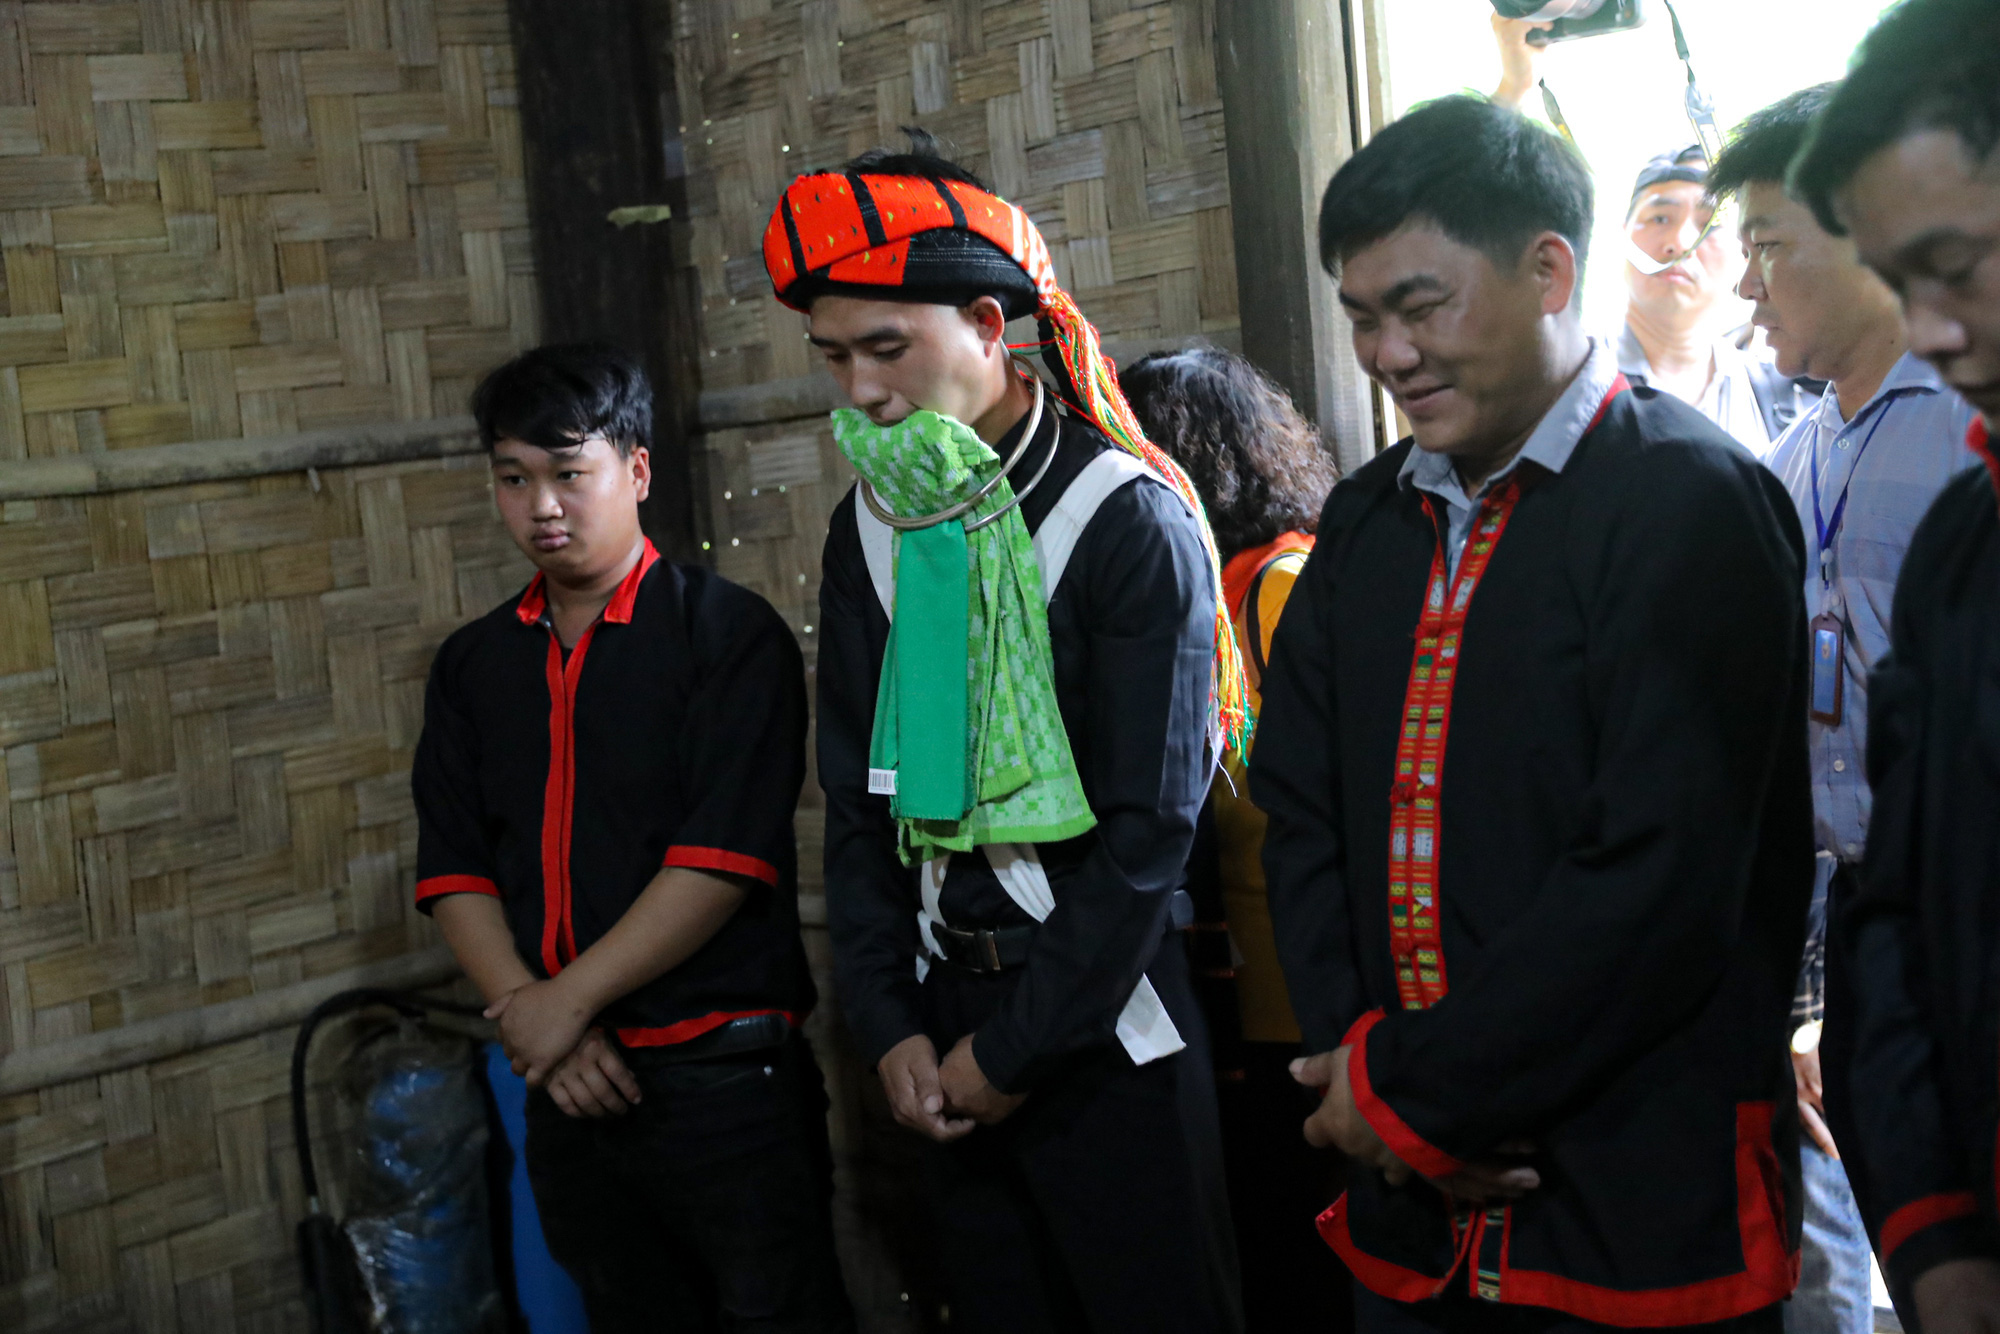 Tái hiện lễ cưới của Dân tộc Pà Thẻn (Hà Giang) và nghi lễ Mừng lúa mới của dân tộc Bahnar (Gia Lai)  tại Hà Nội - Ảnh 5.